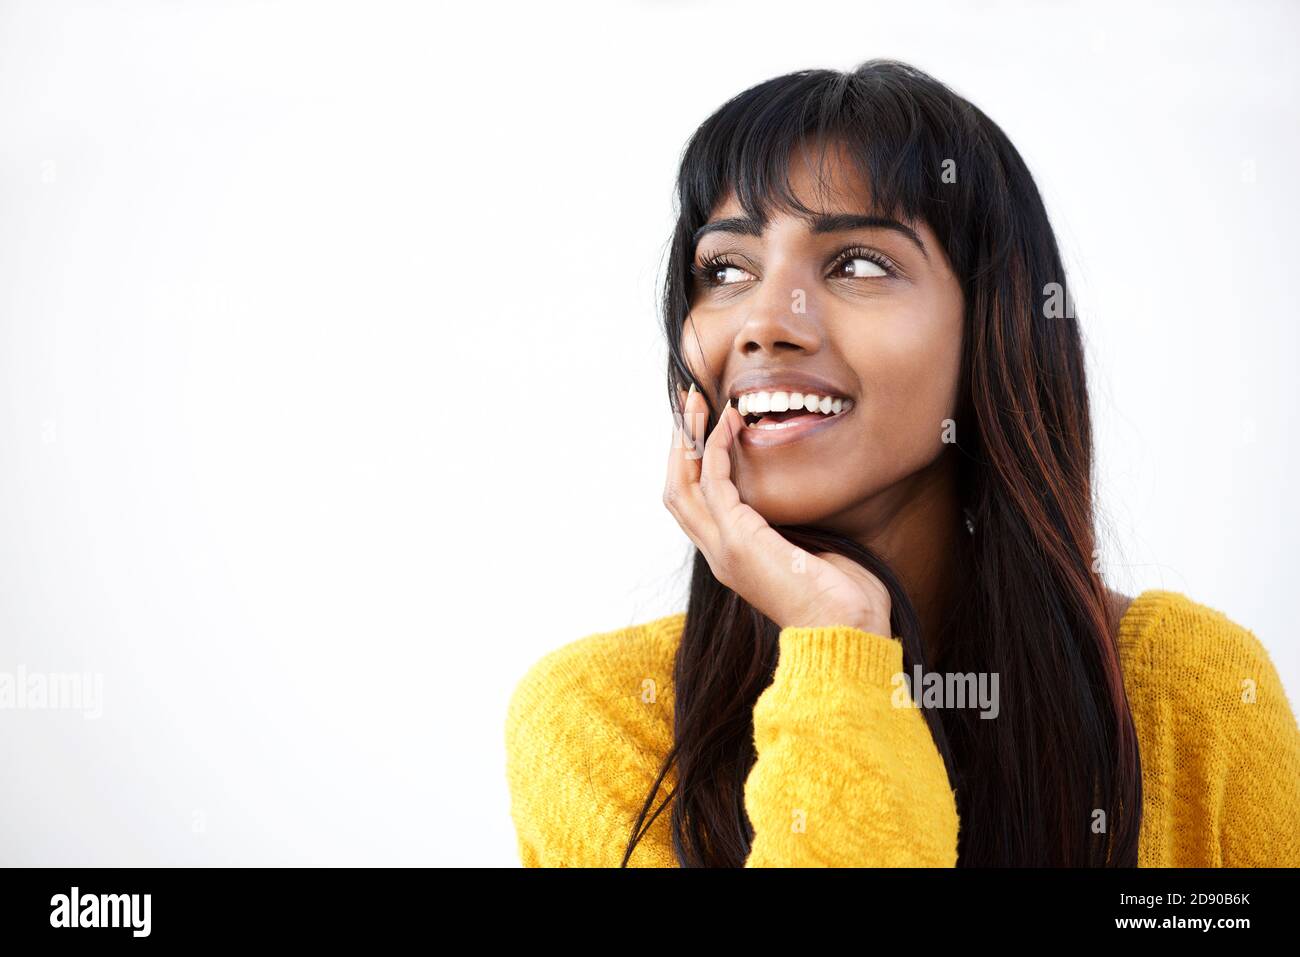 Gros plan d'une jeune femme indienne souriante à la main par la bouche Banque D'Images